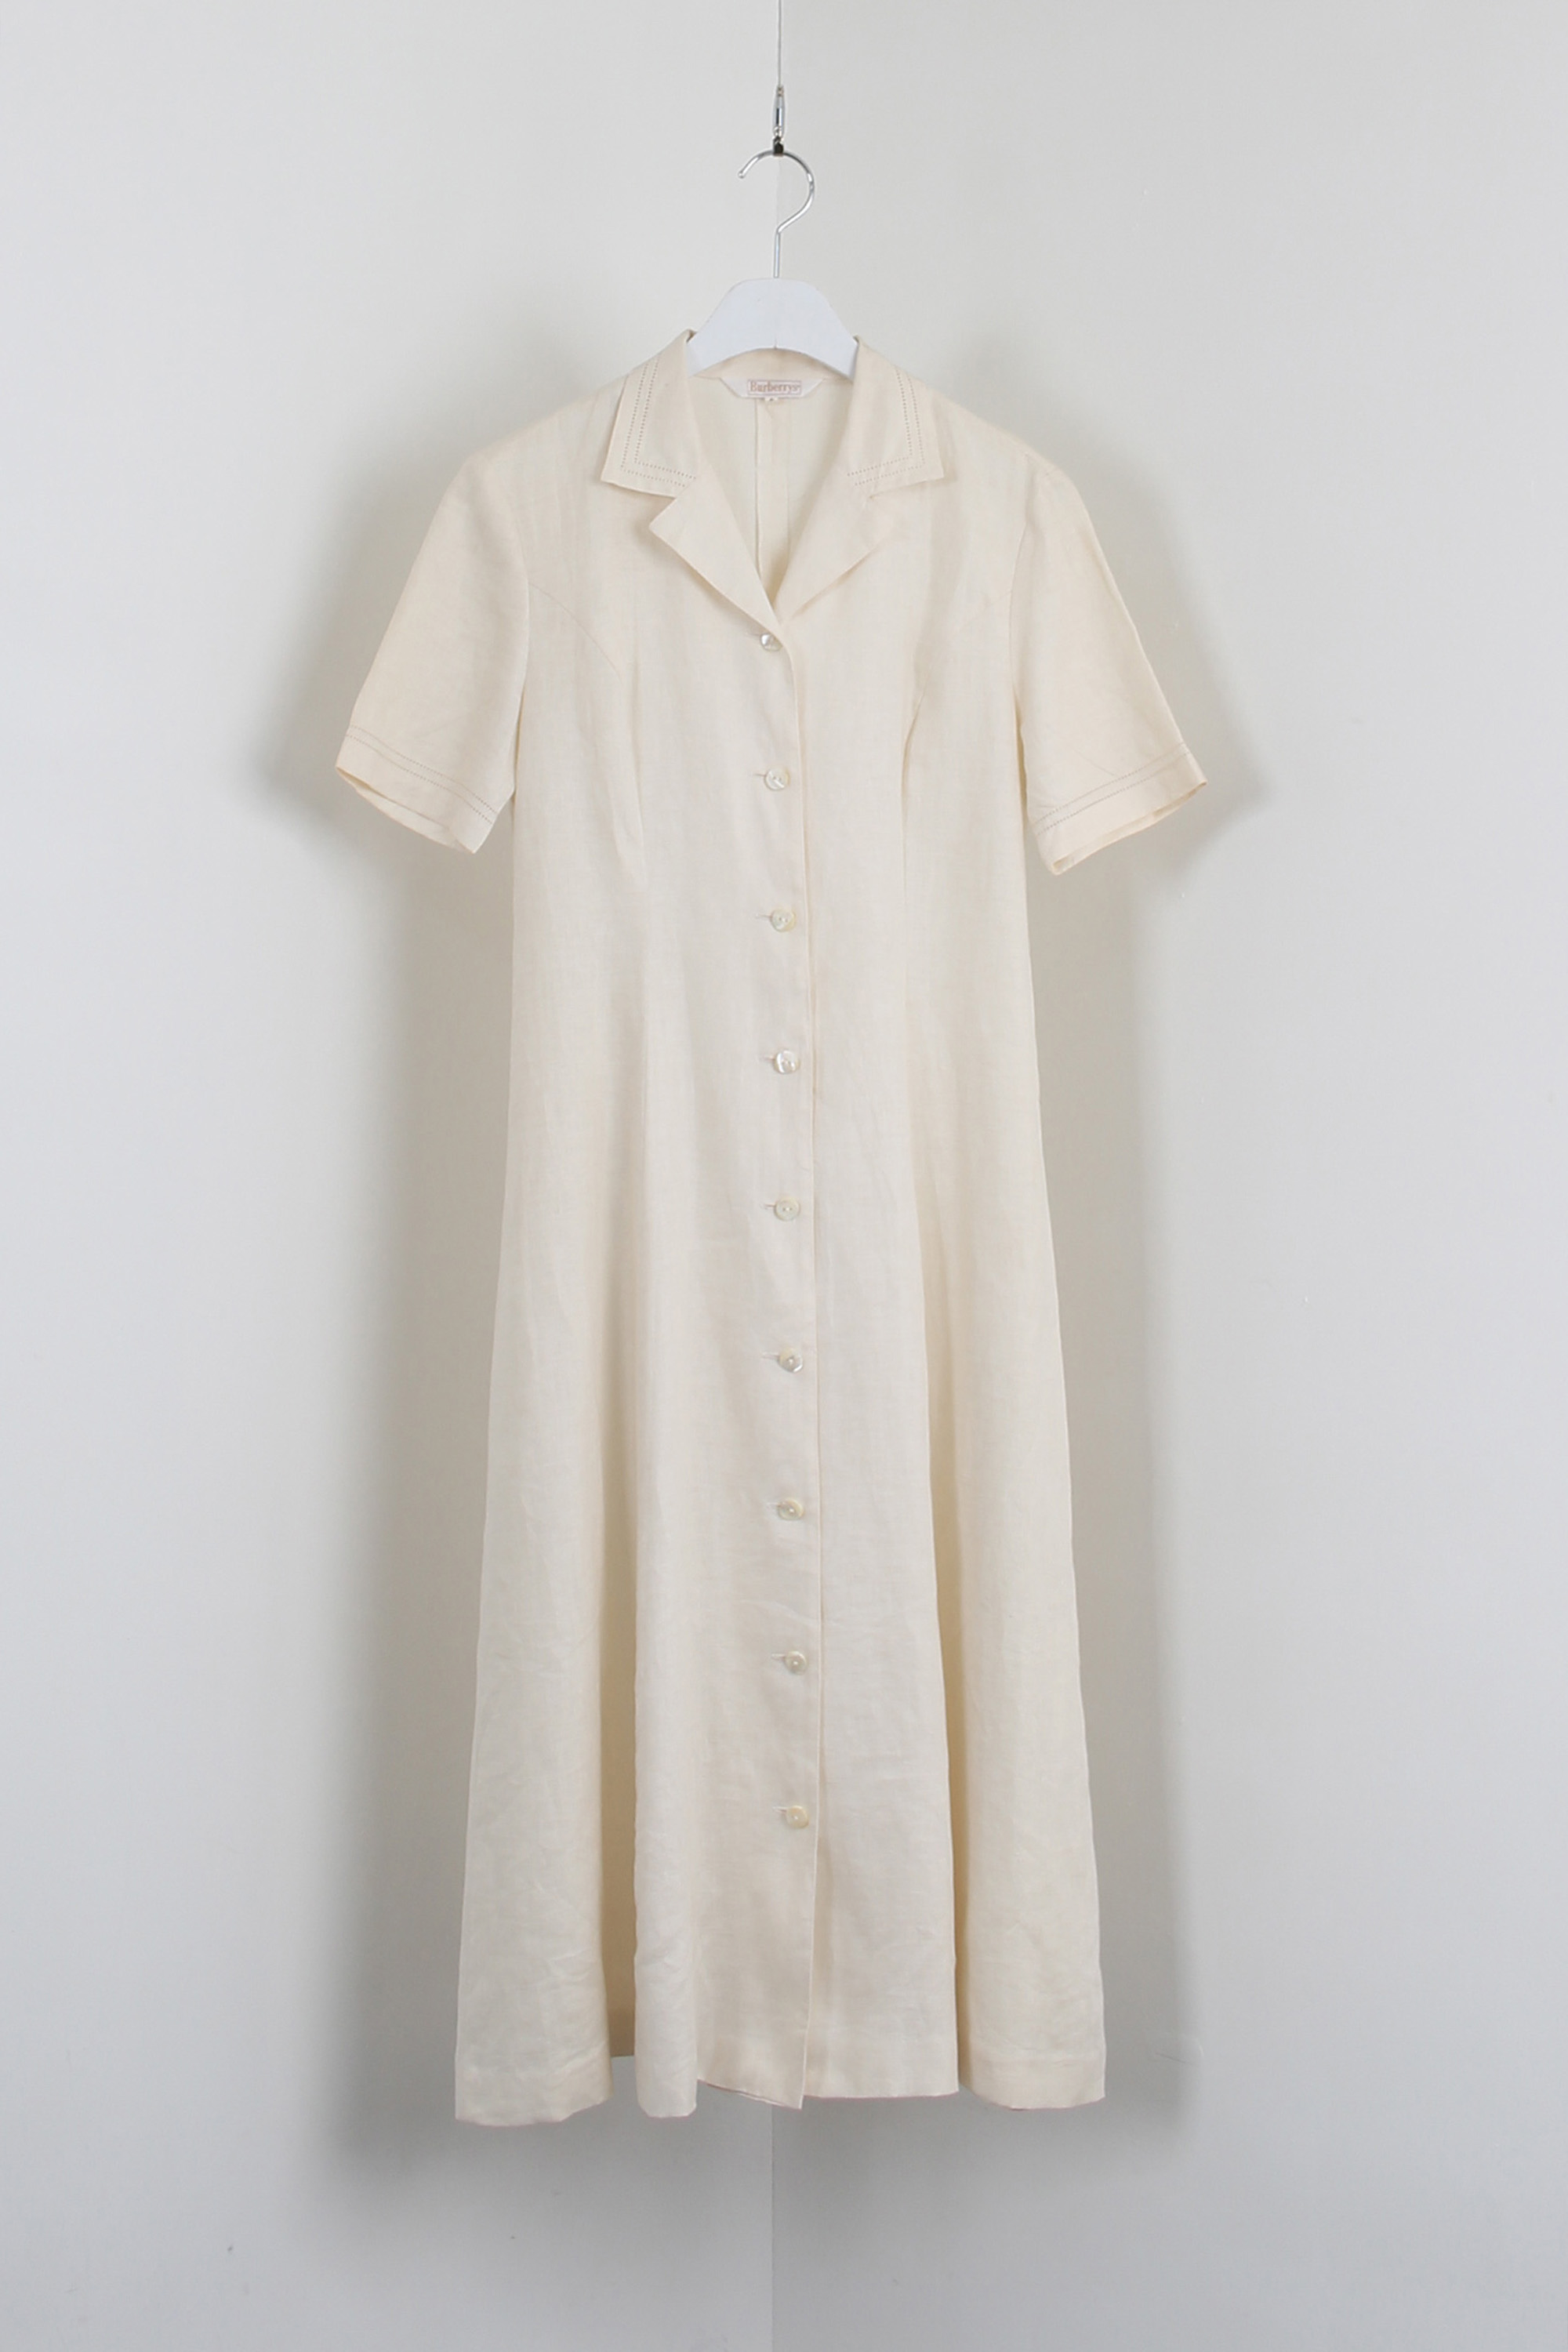 BURBERRY linen dress